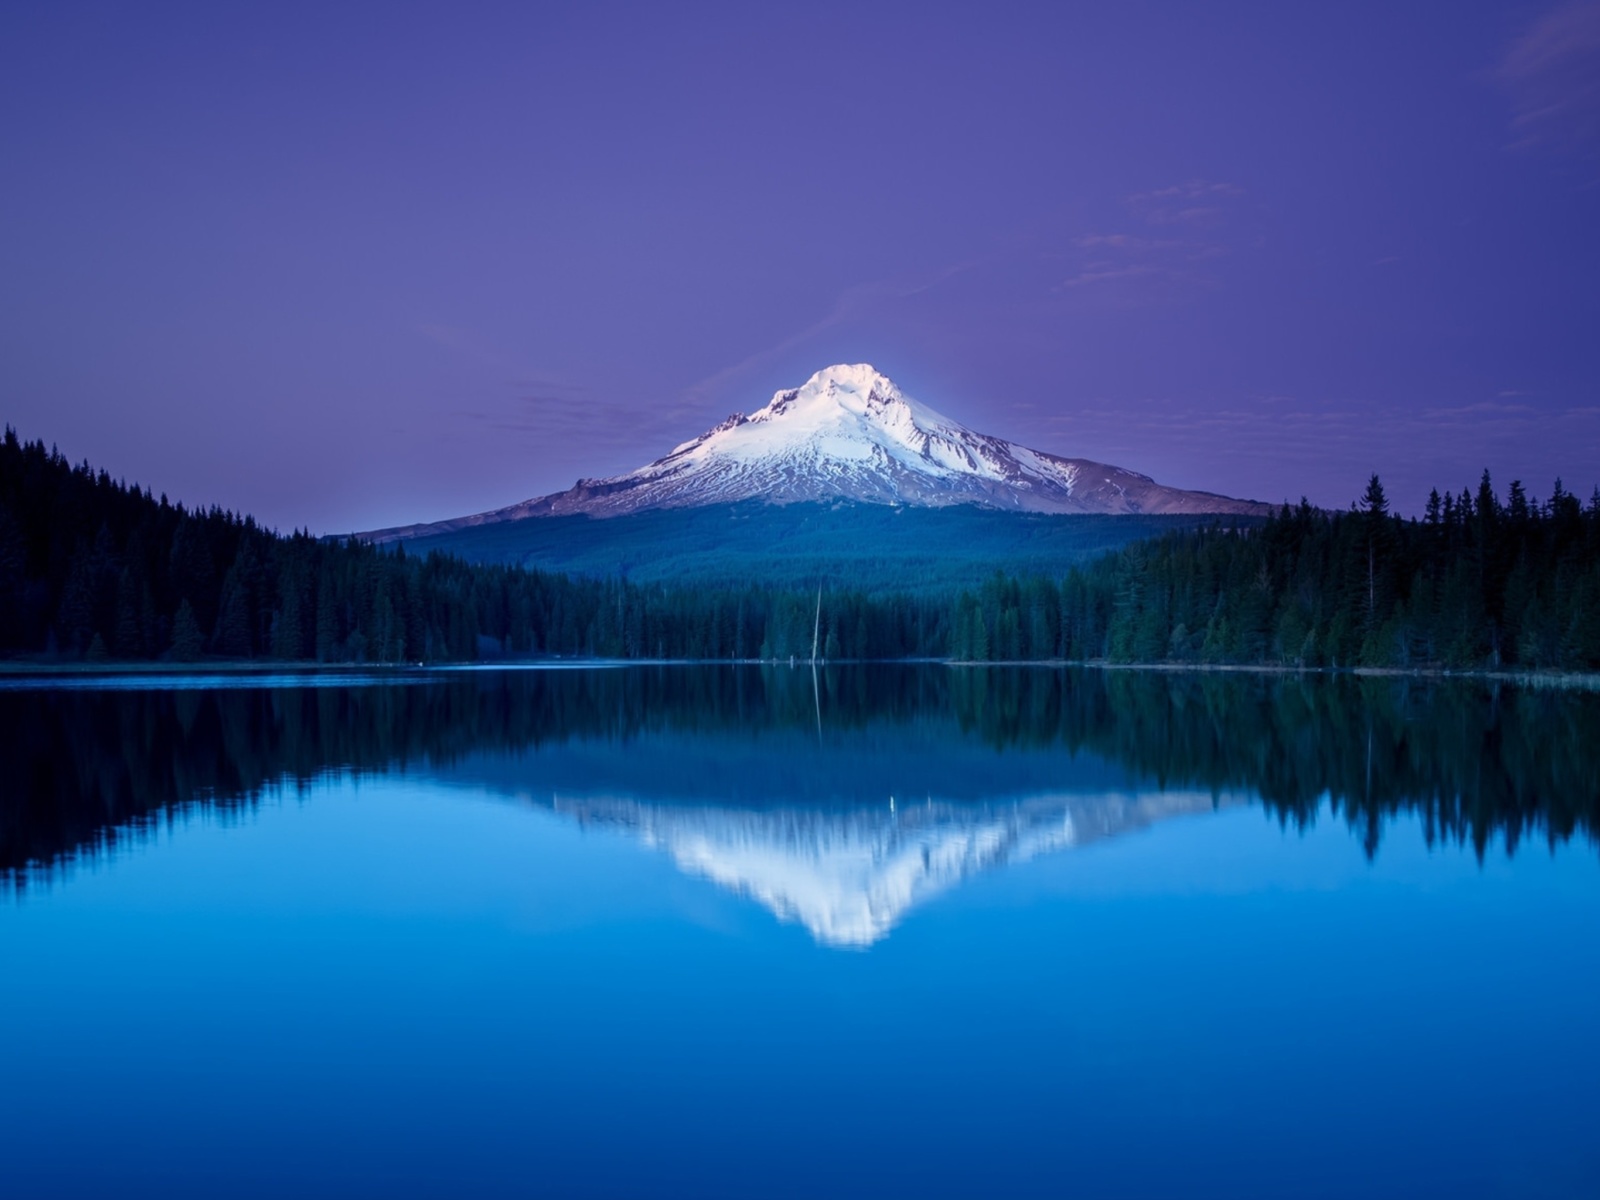 Обои Mountains with lake reflection 1600x1200